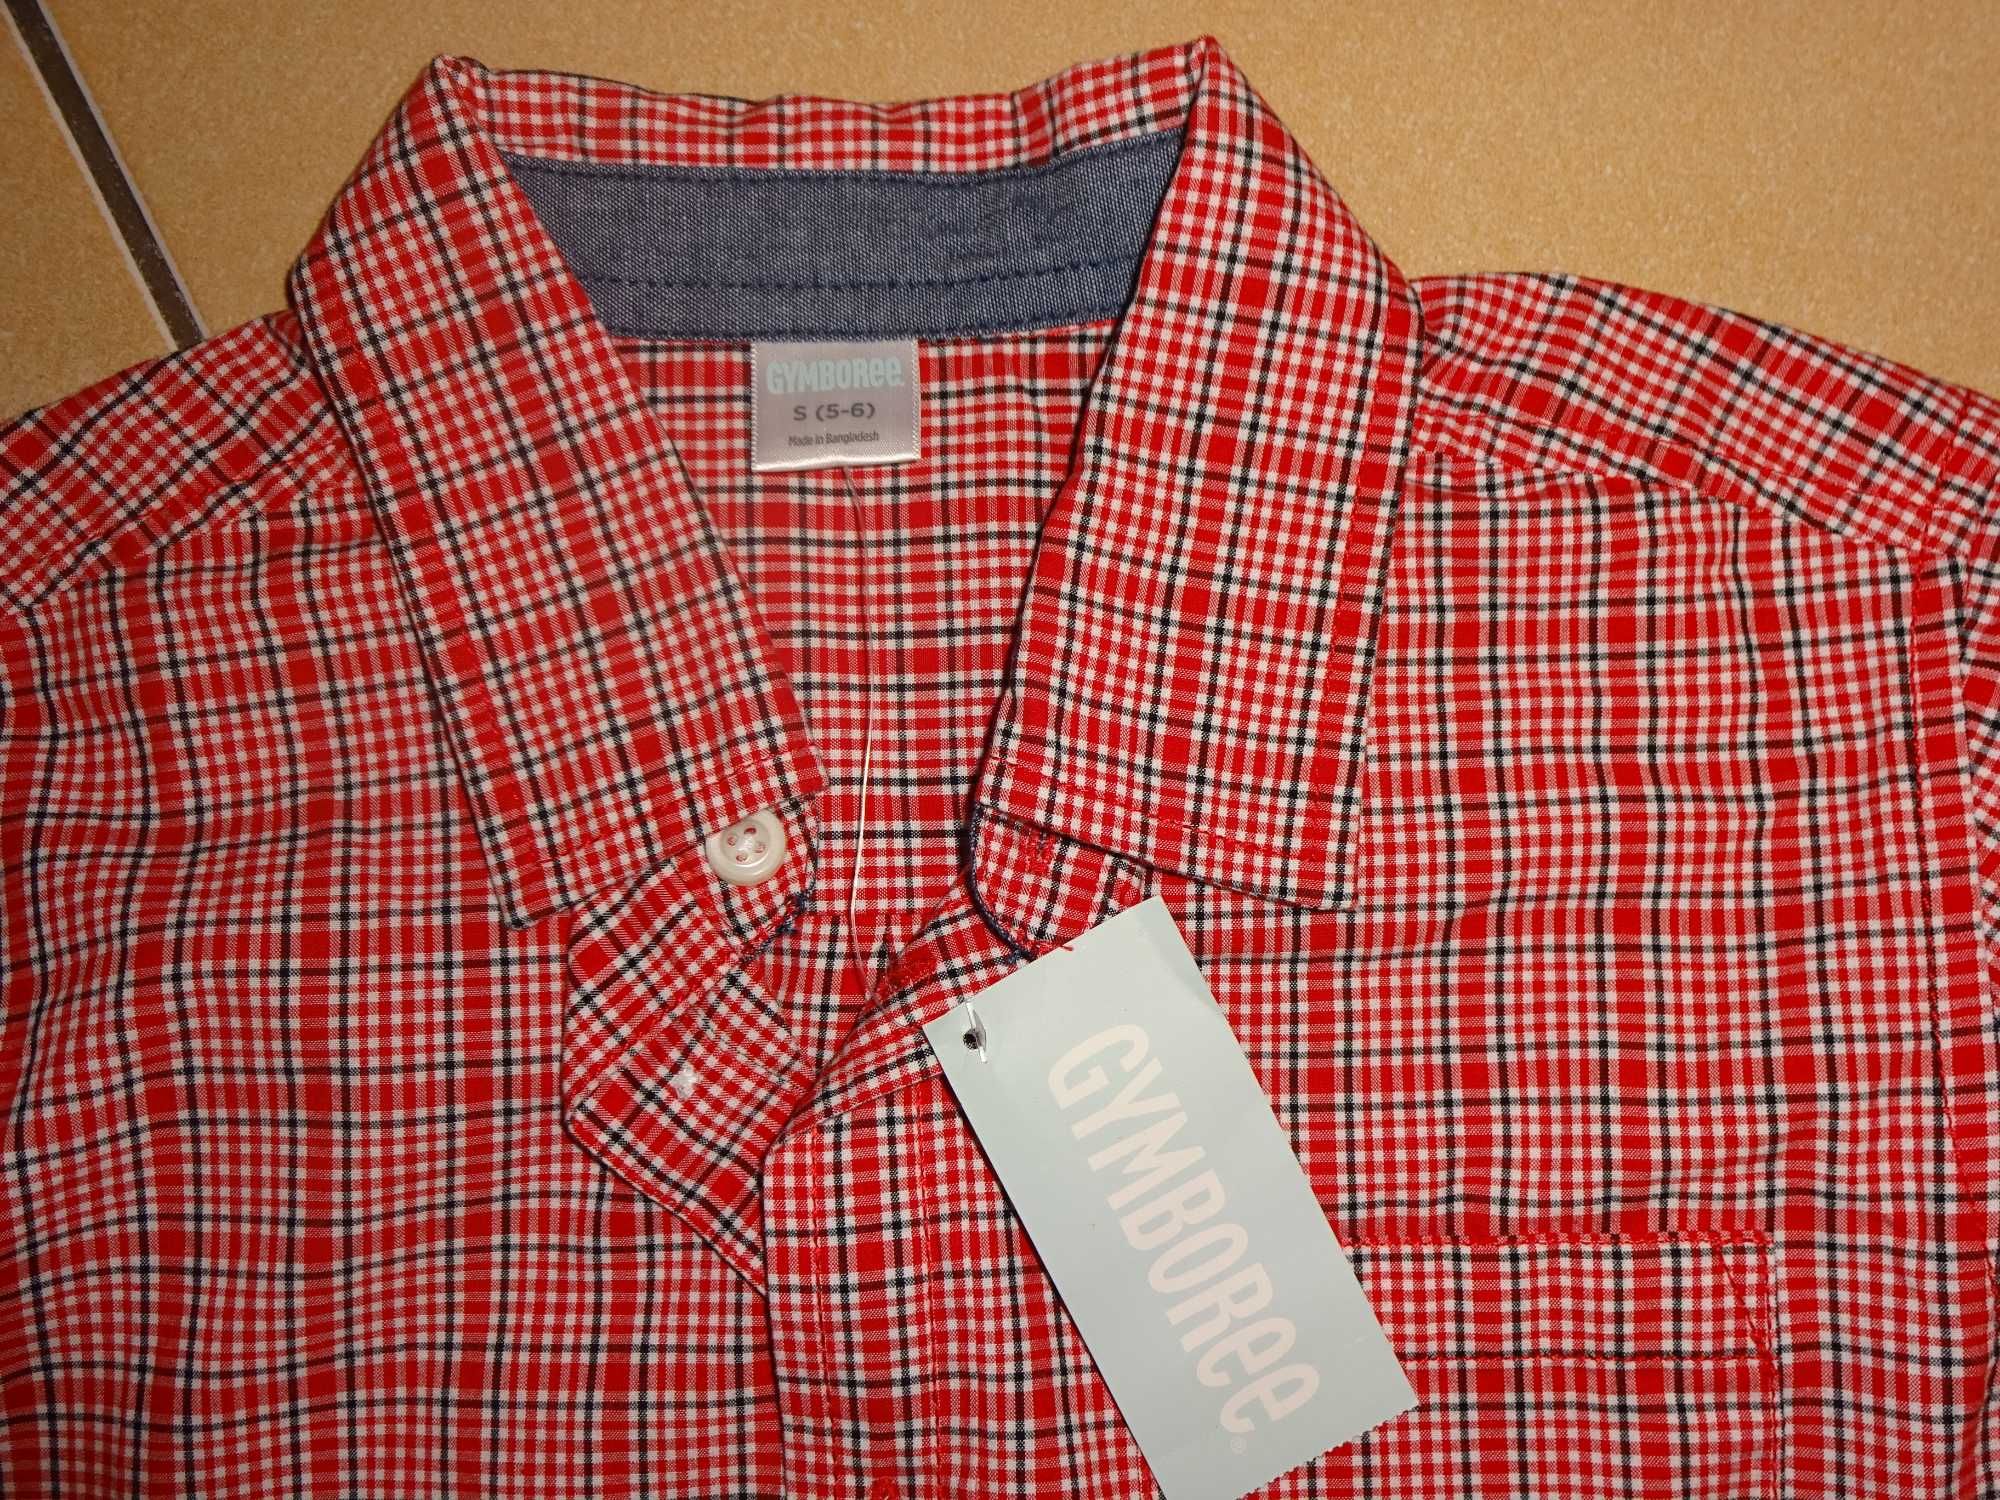 GYMBOREE bawełniana czerwona w kratkę koszula 100% cotton S / 5-6 lat